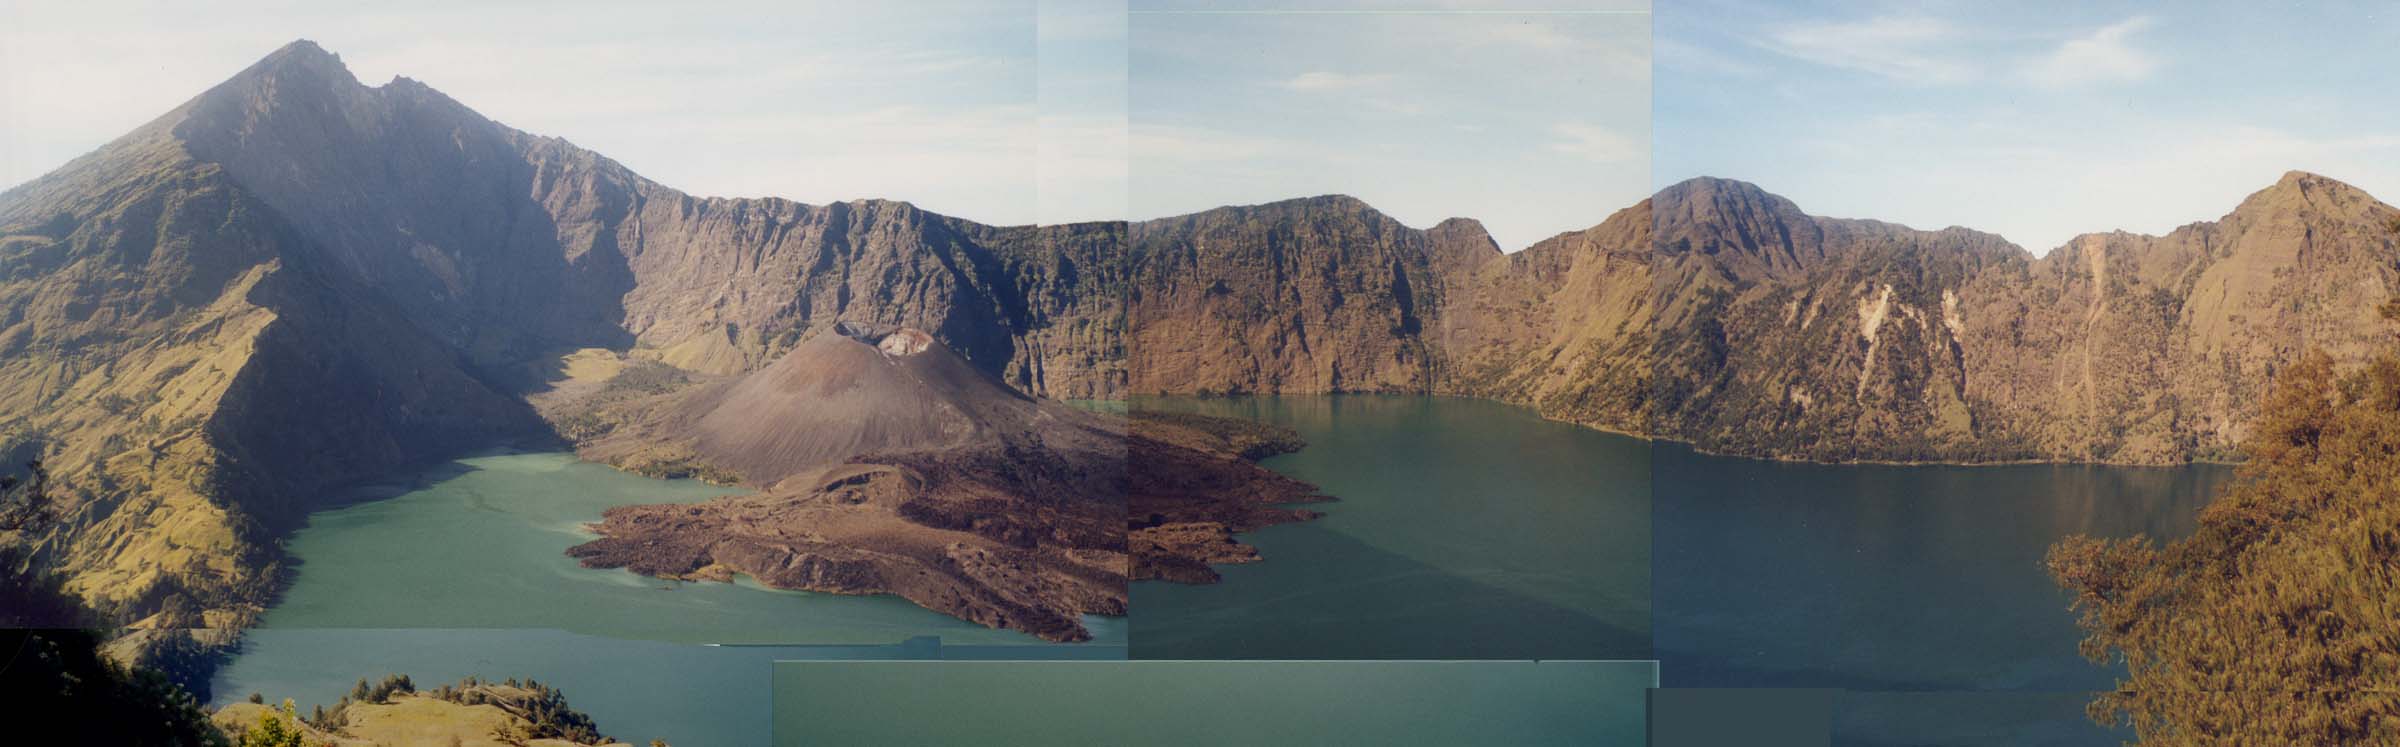 Der Krater des Gunung Rinjani auf Lombok